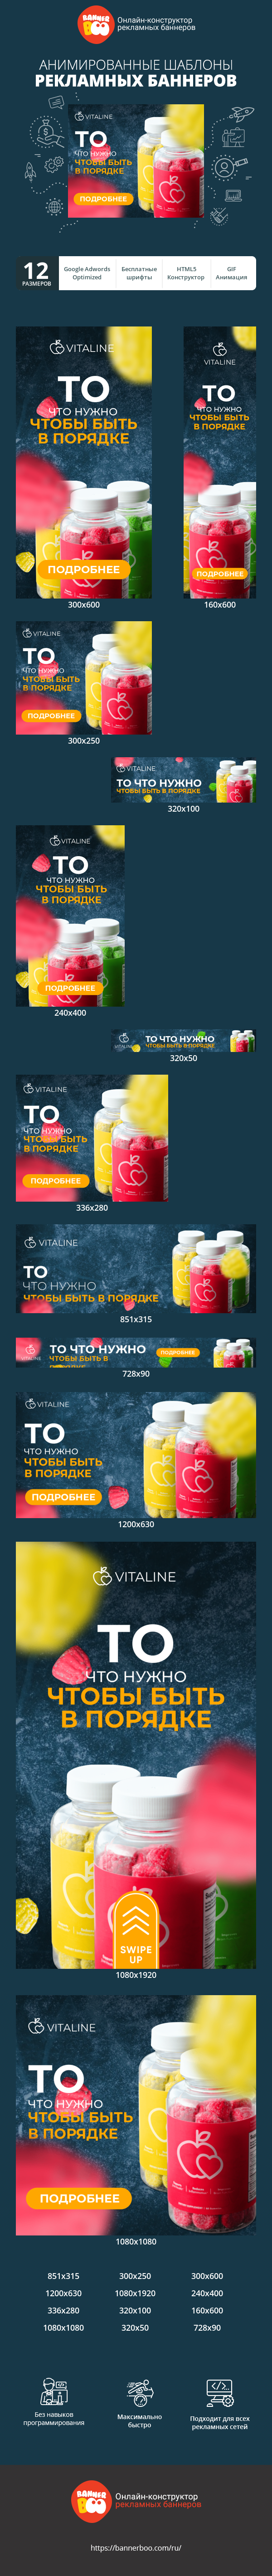 Шаблон рекламного банера — То что нужно чтобы быть в порядке — витамины